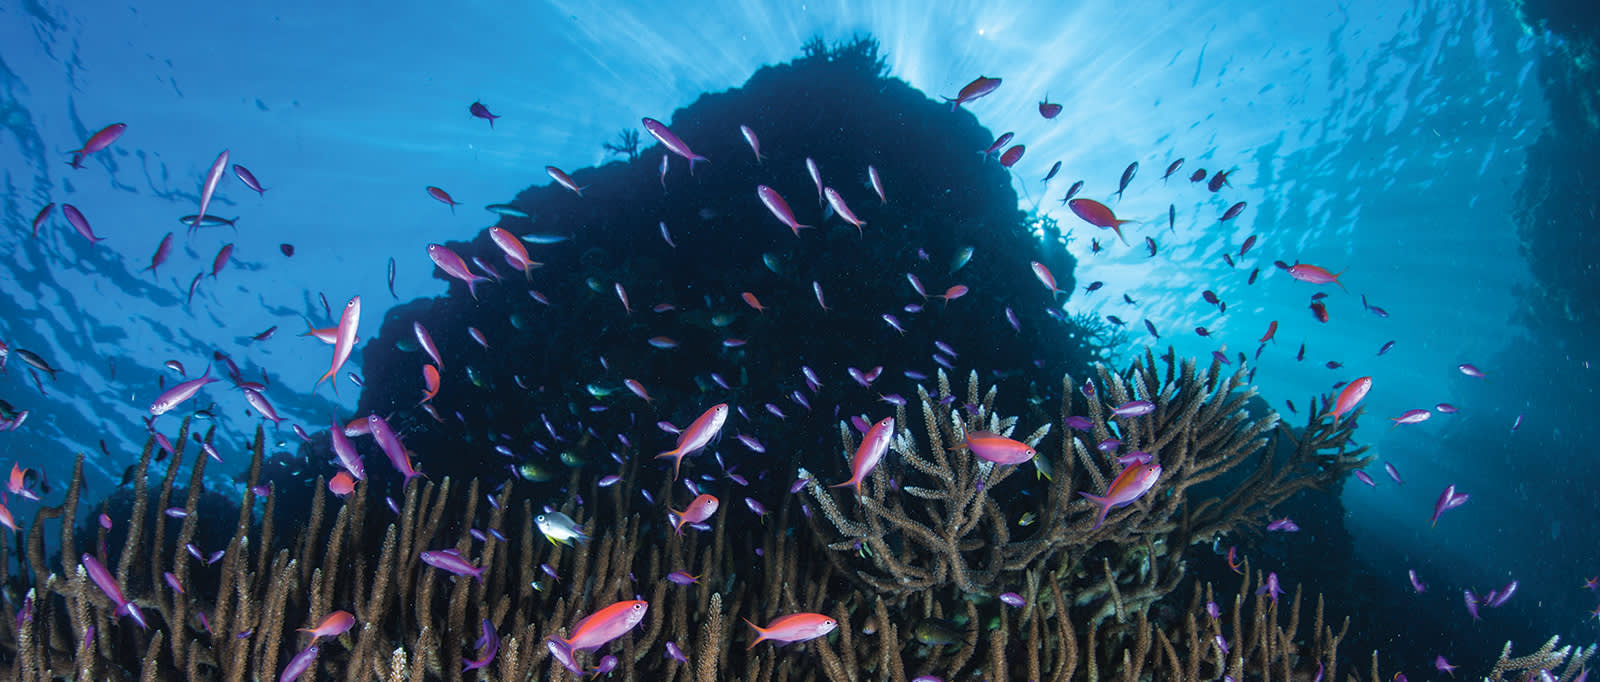 Colorful fish in the Maldives